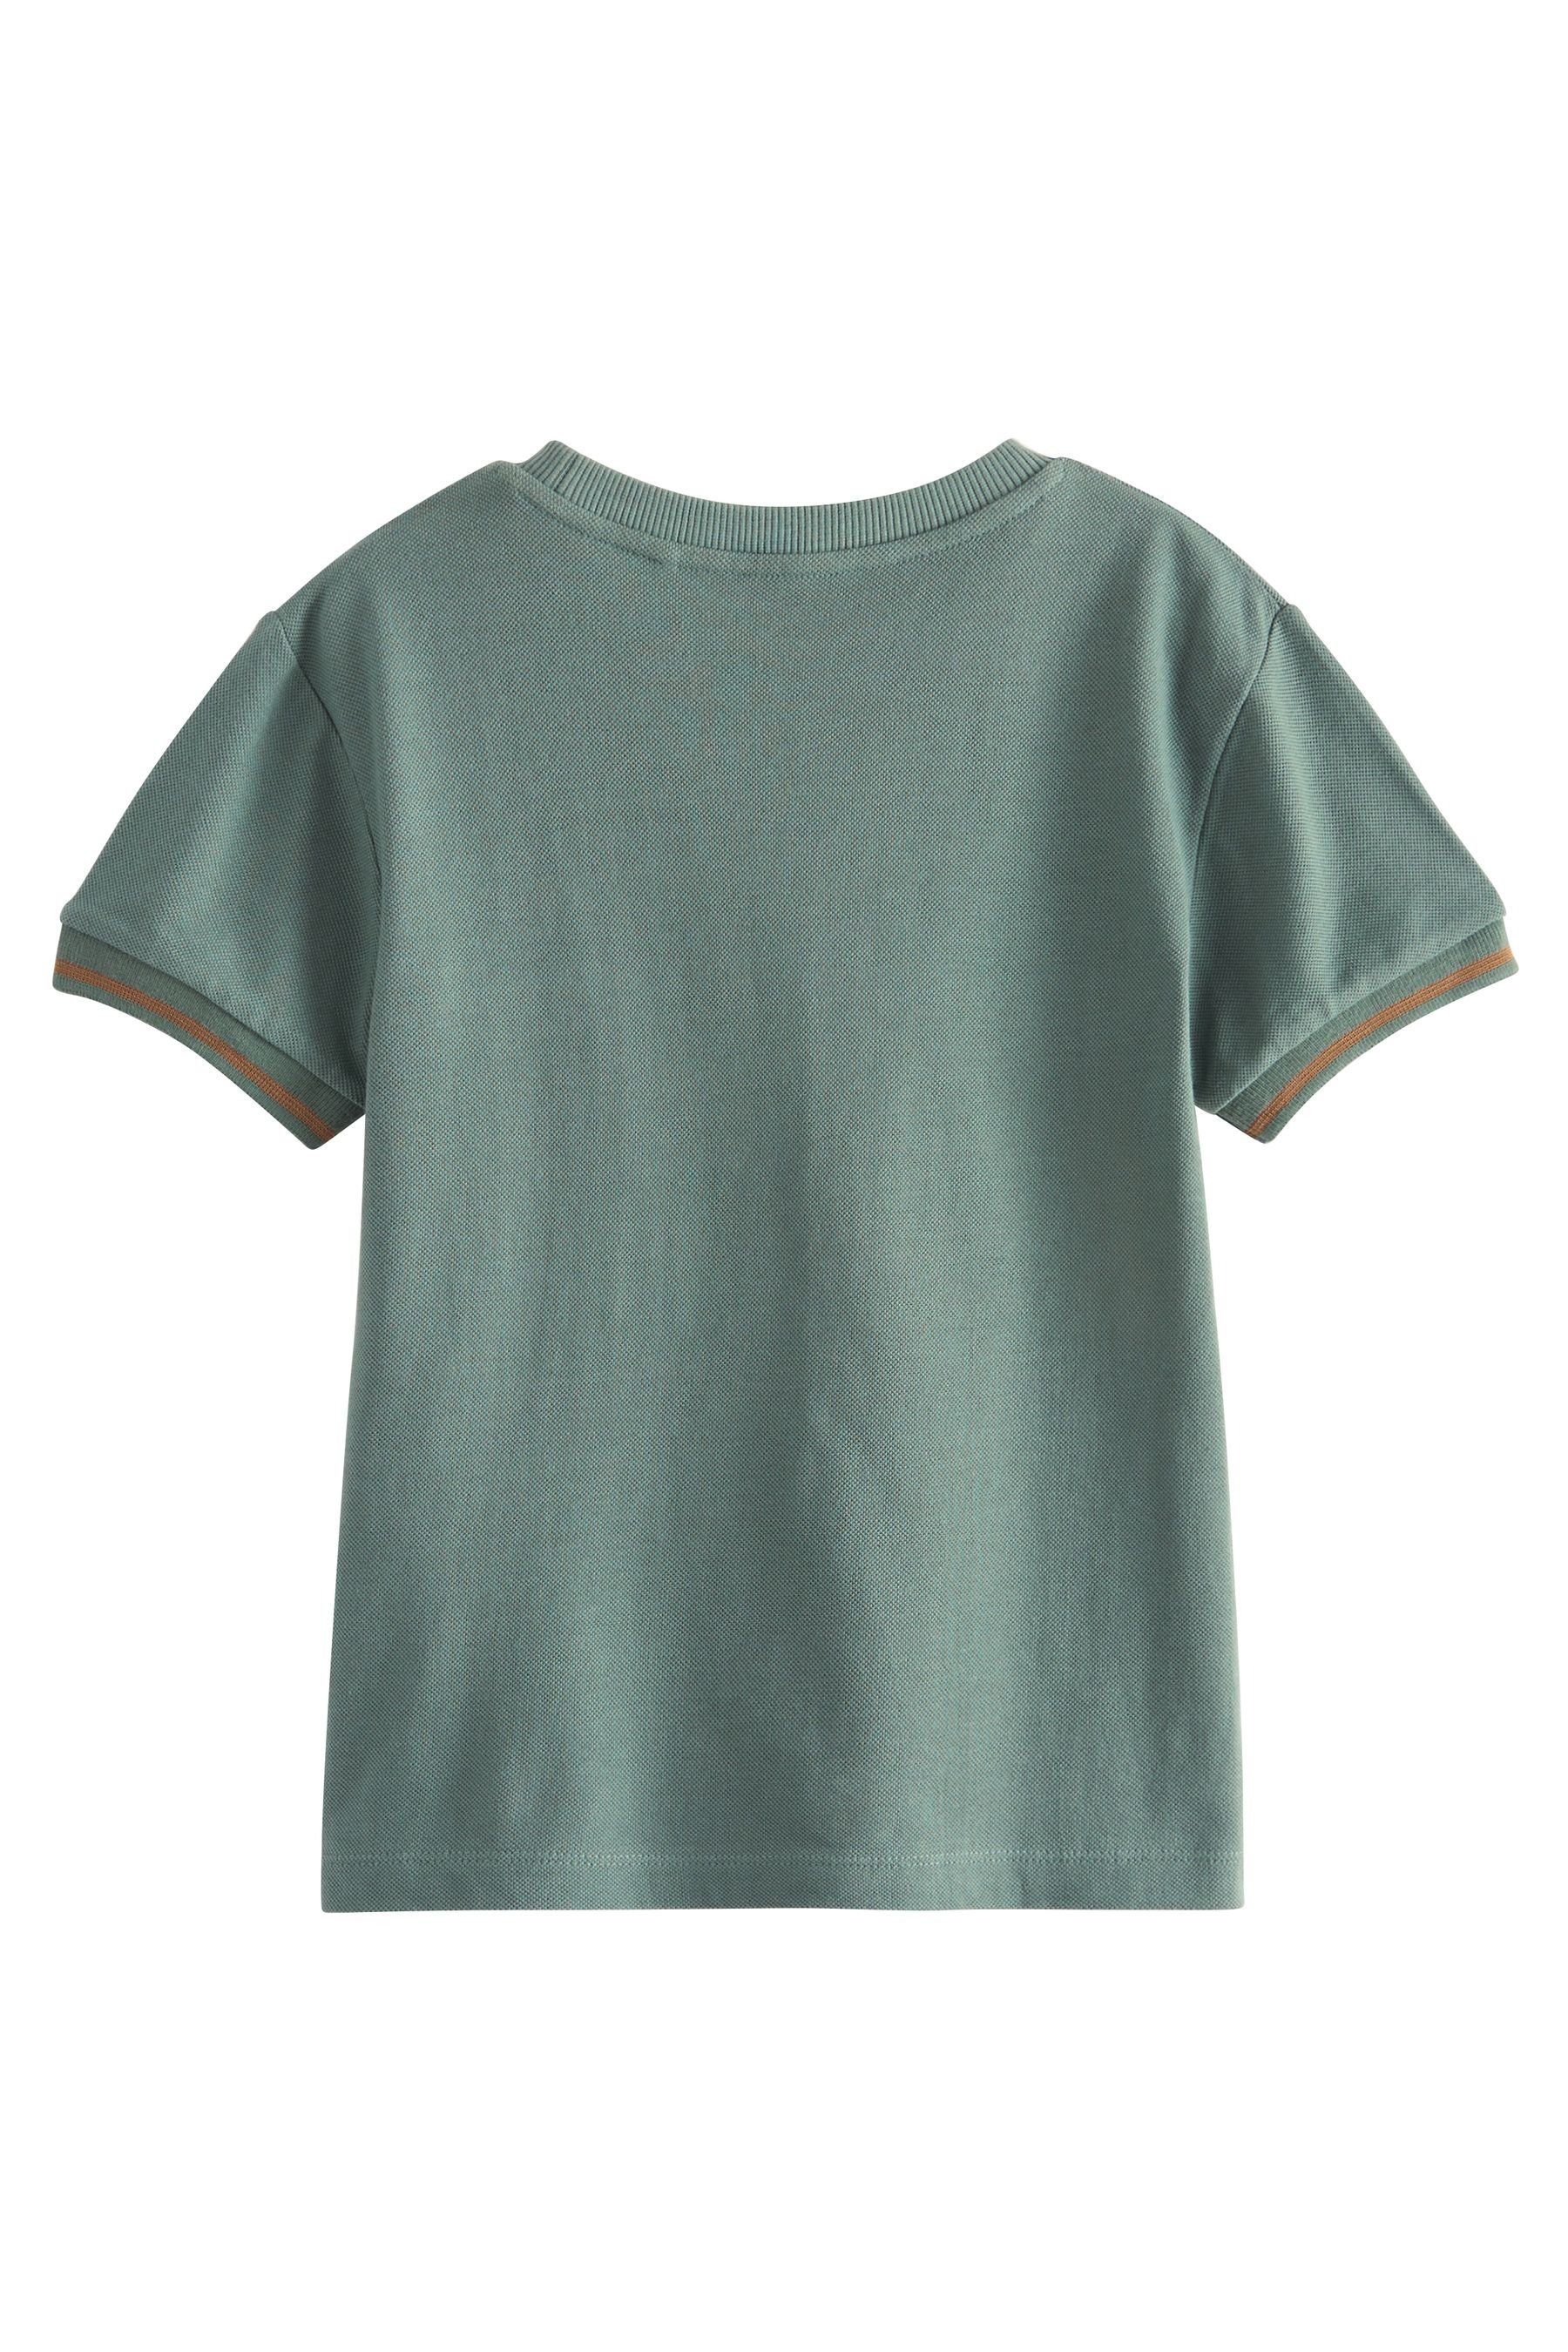 Next Blockfarben Green/Tan (1-tlg) T-Shirt in T-Shirt